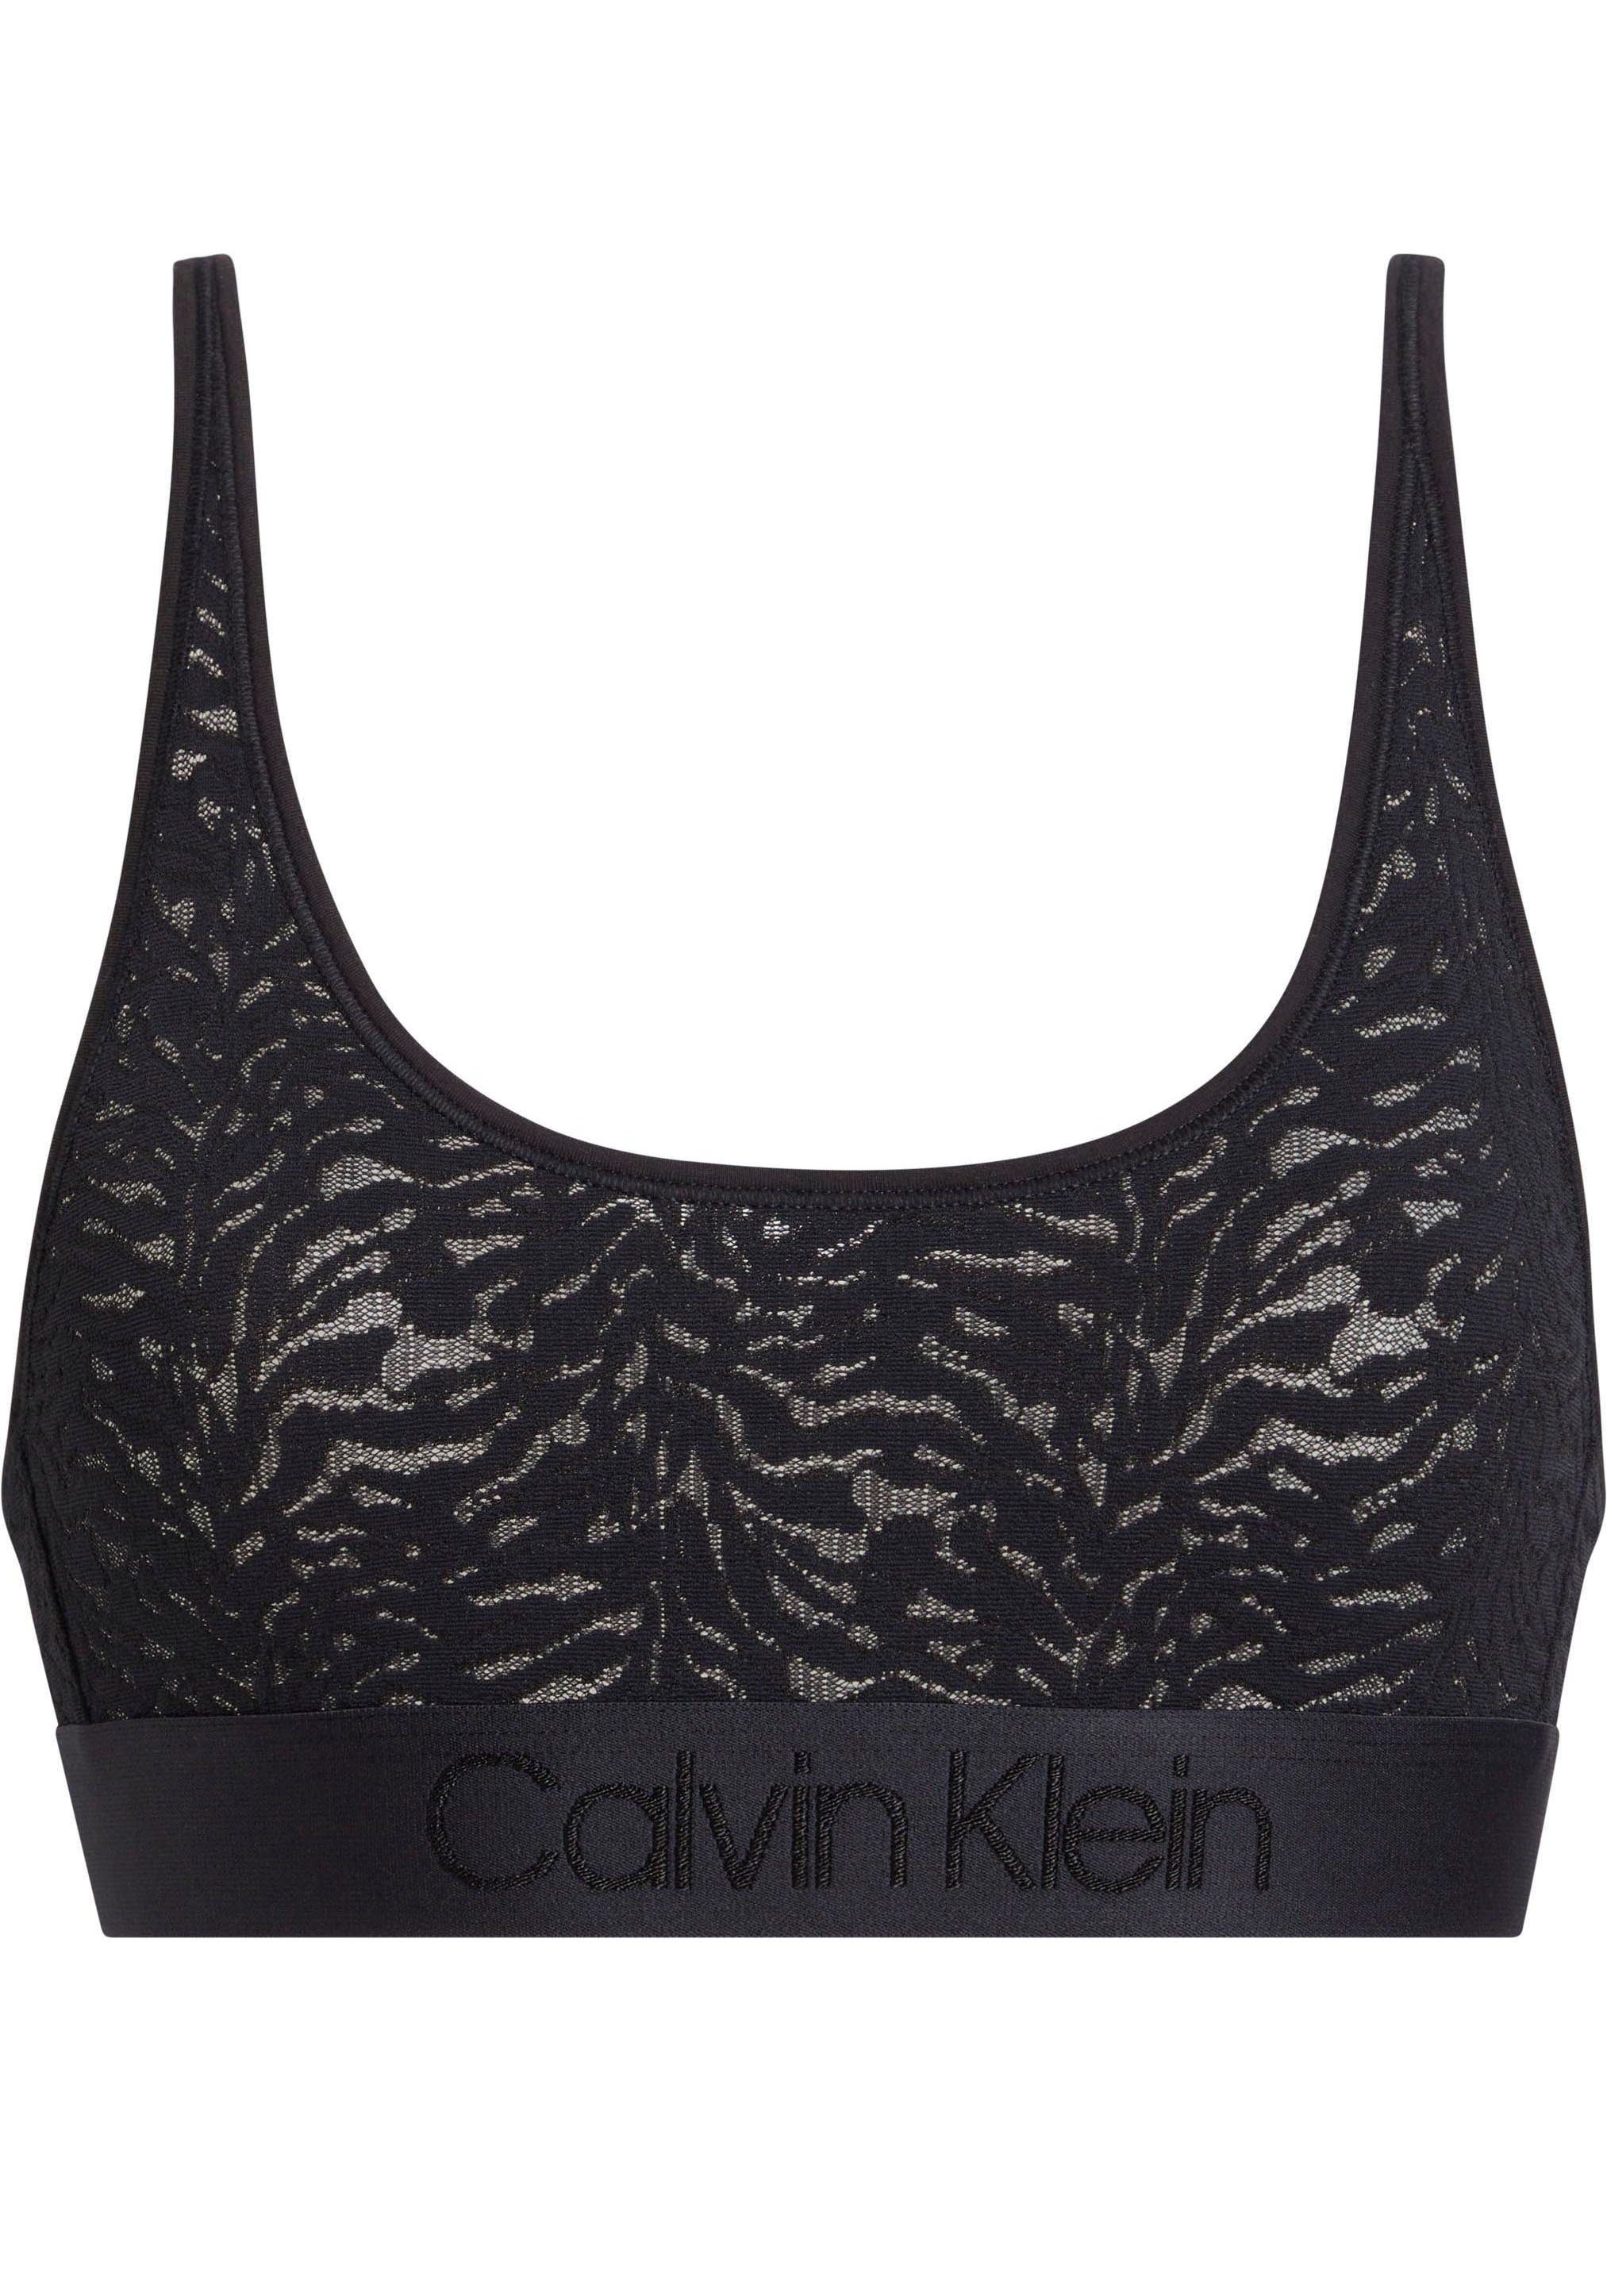 [Neueste Mode] Calvin Klein Bralette-BH Spitze BLACK aus BRALETTE Underwear UNLINED